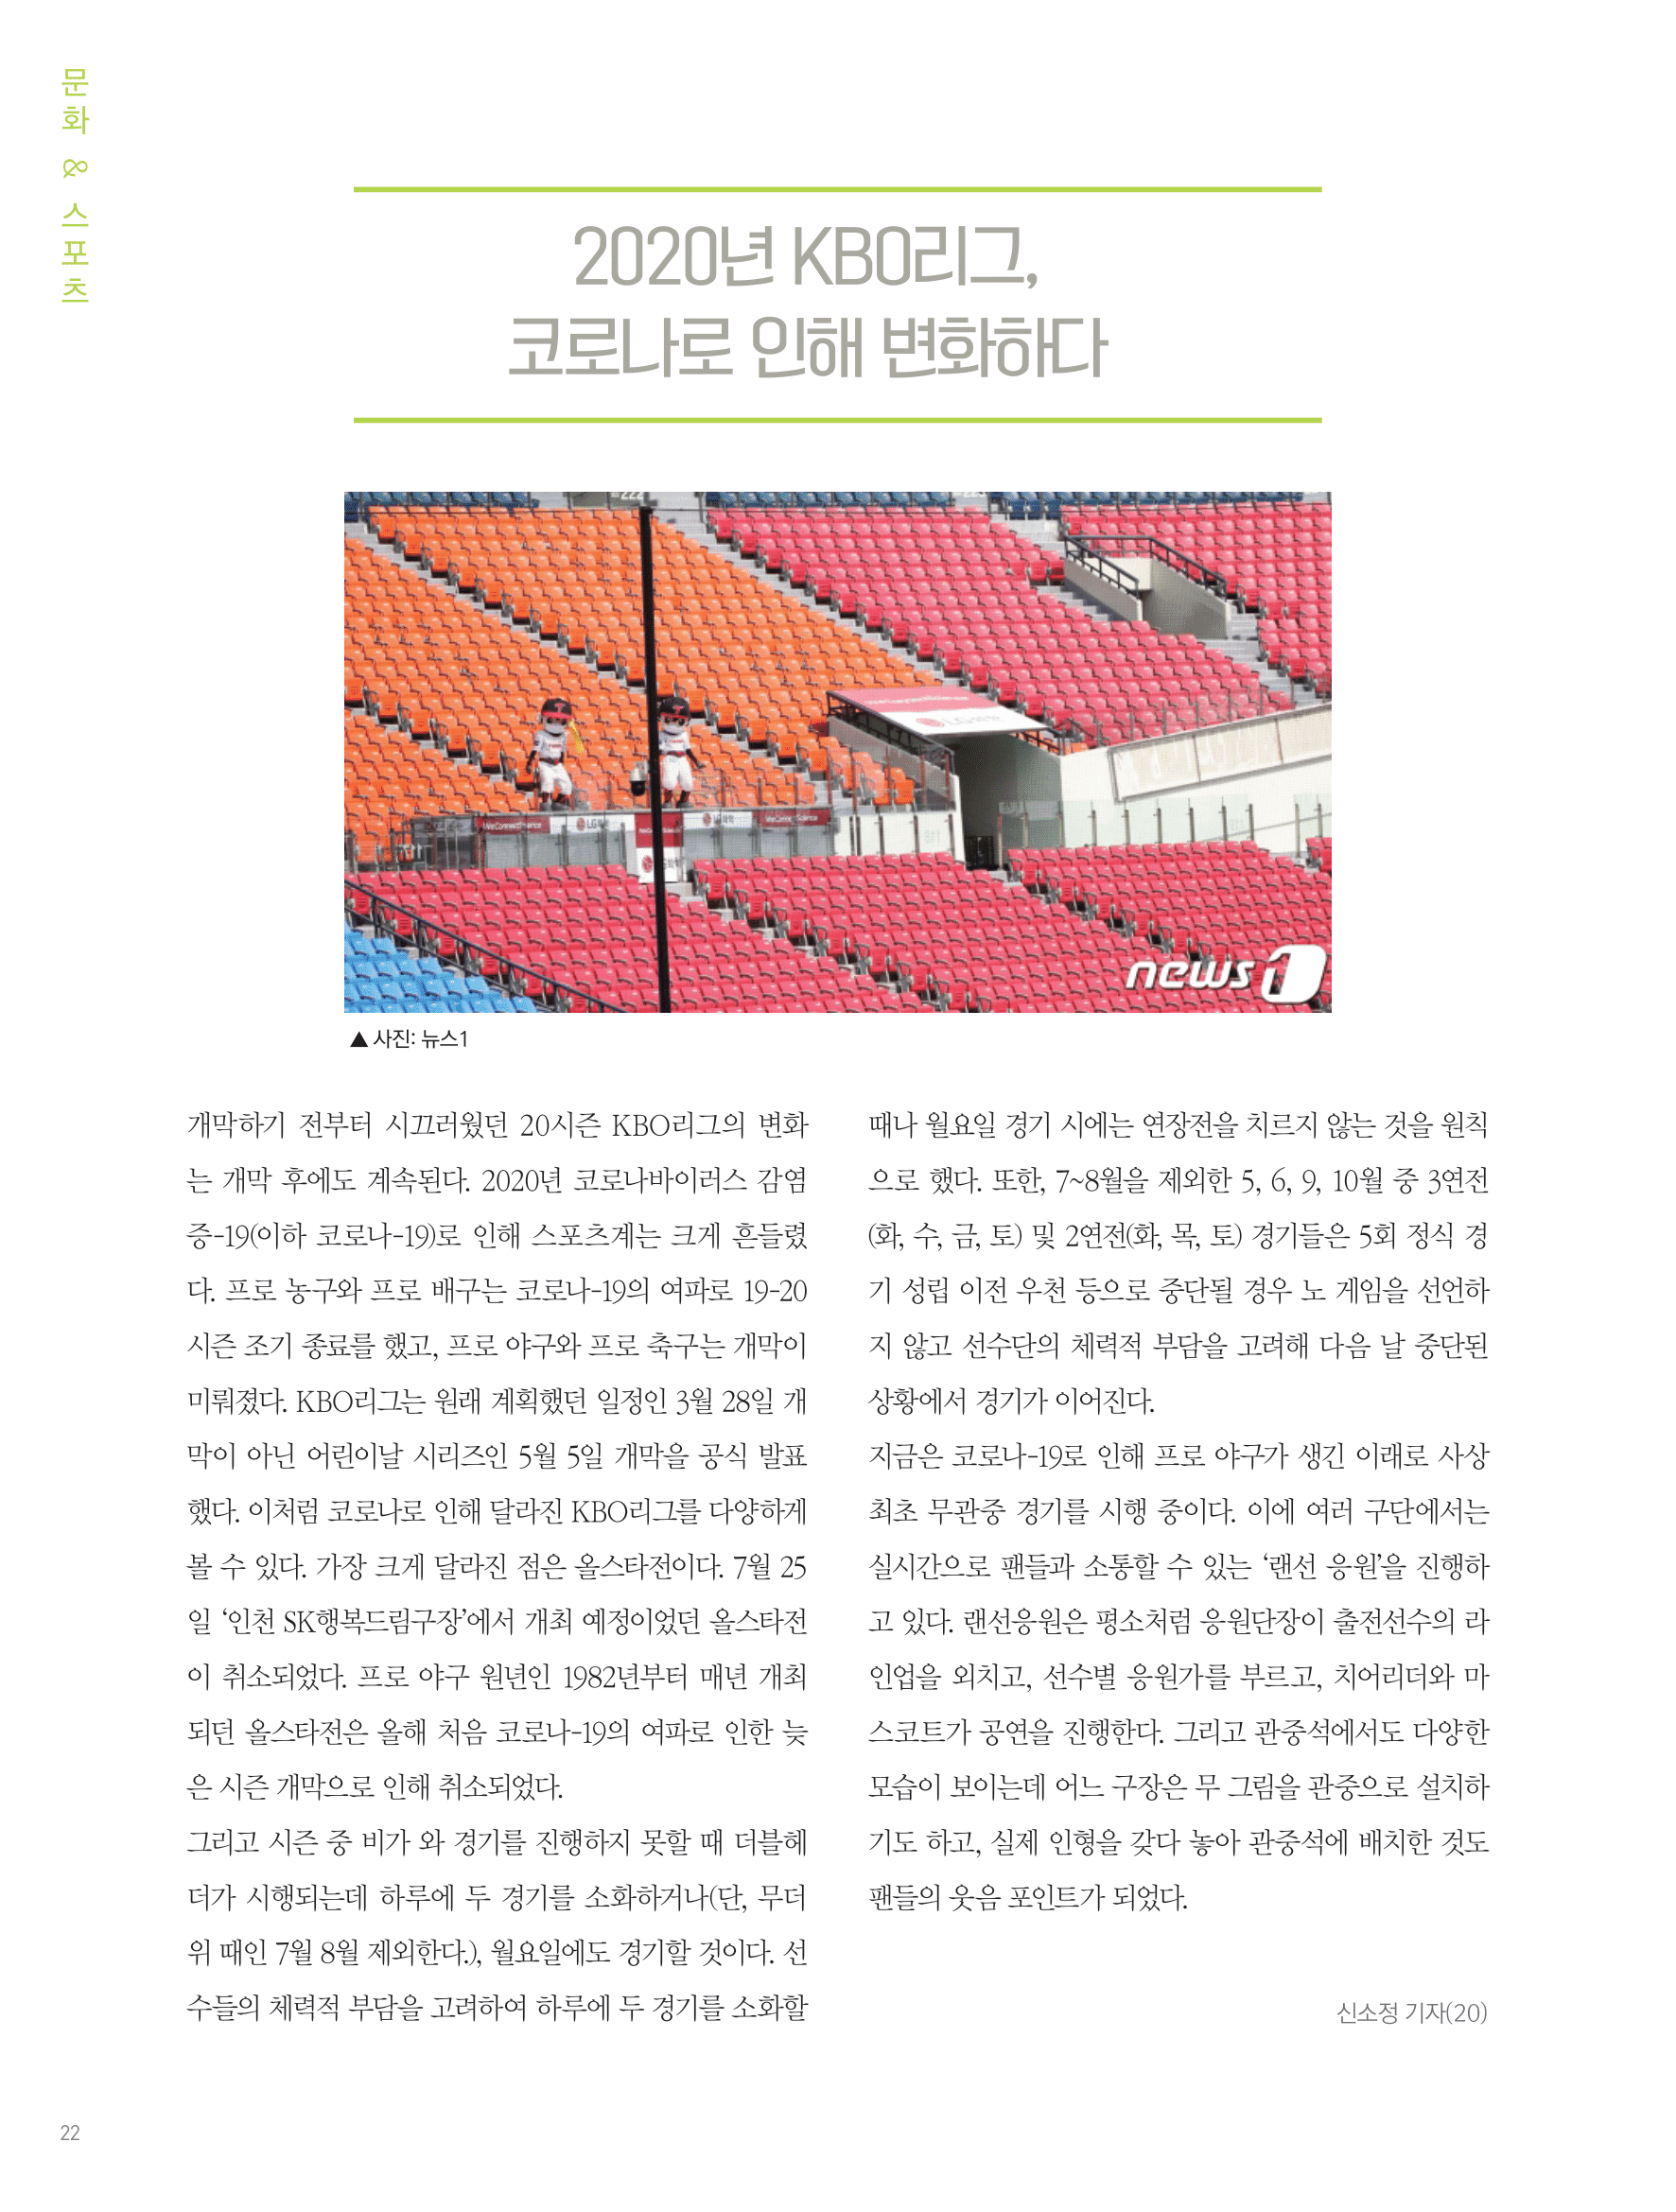 뜻새김 신문 75호 20